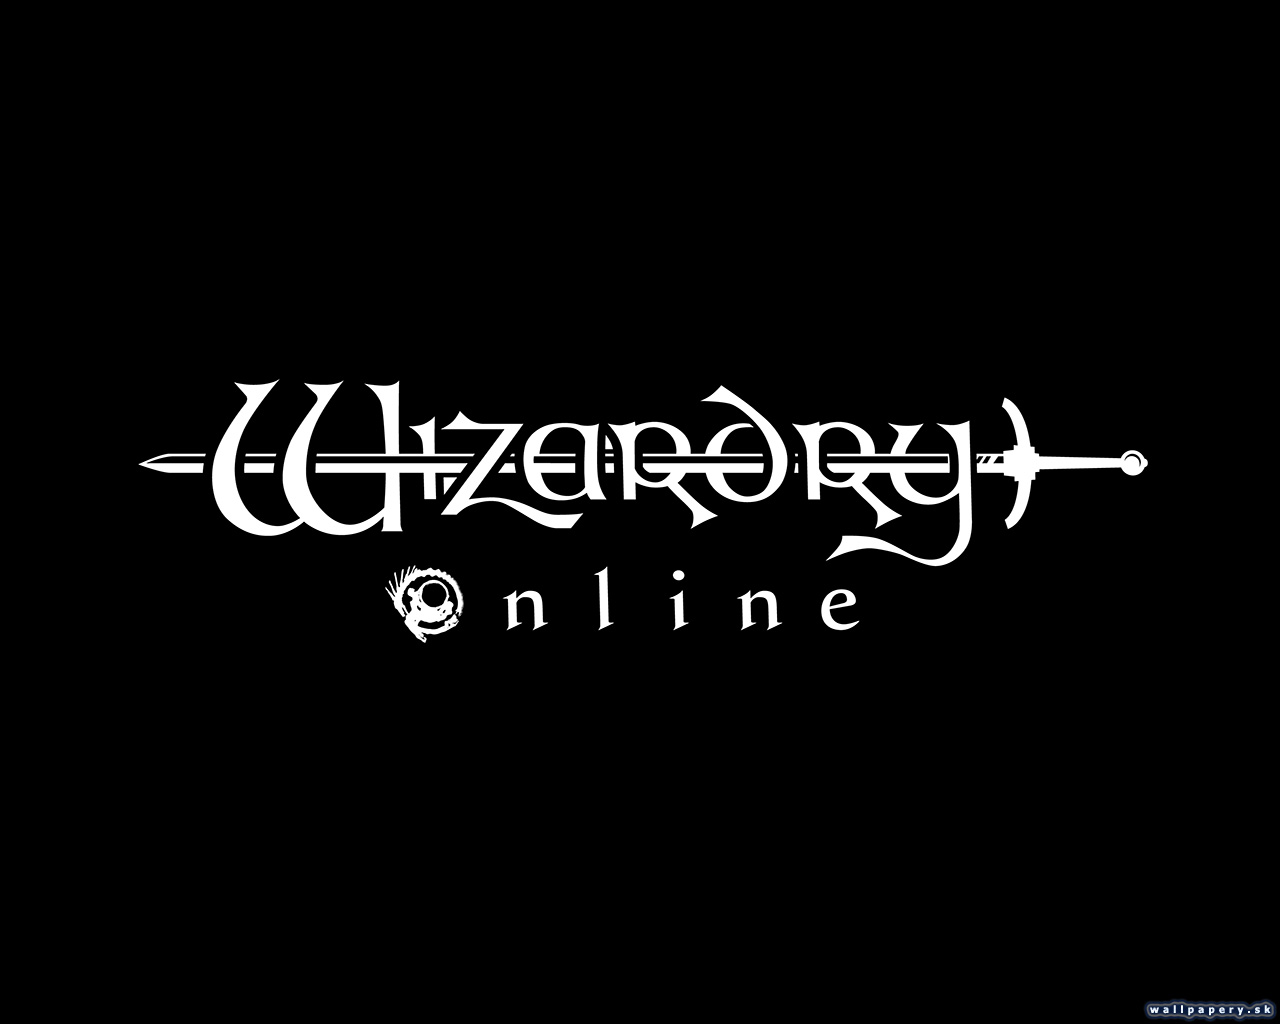 Wizardry Online - wallpaper 8